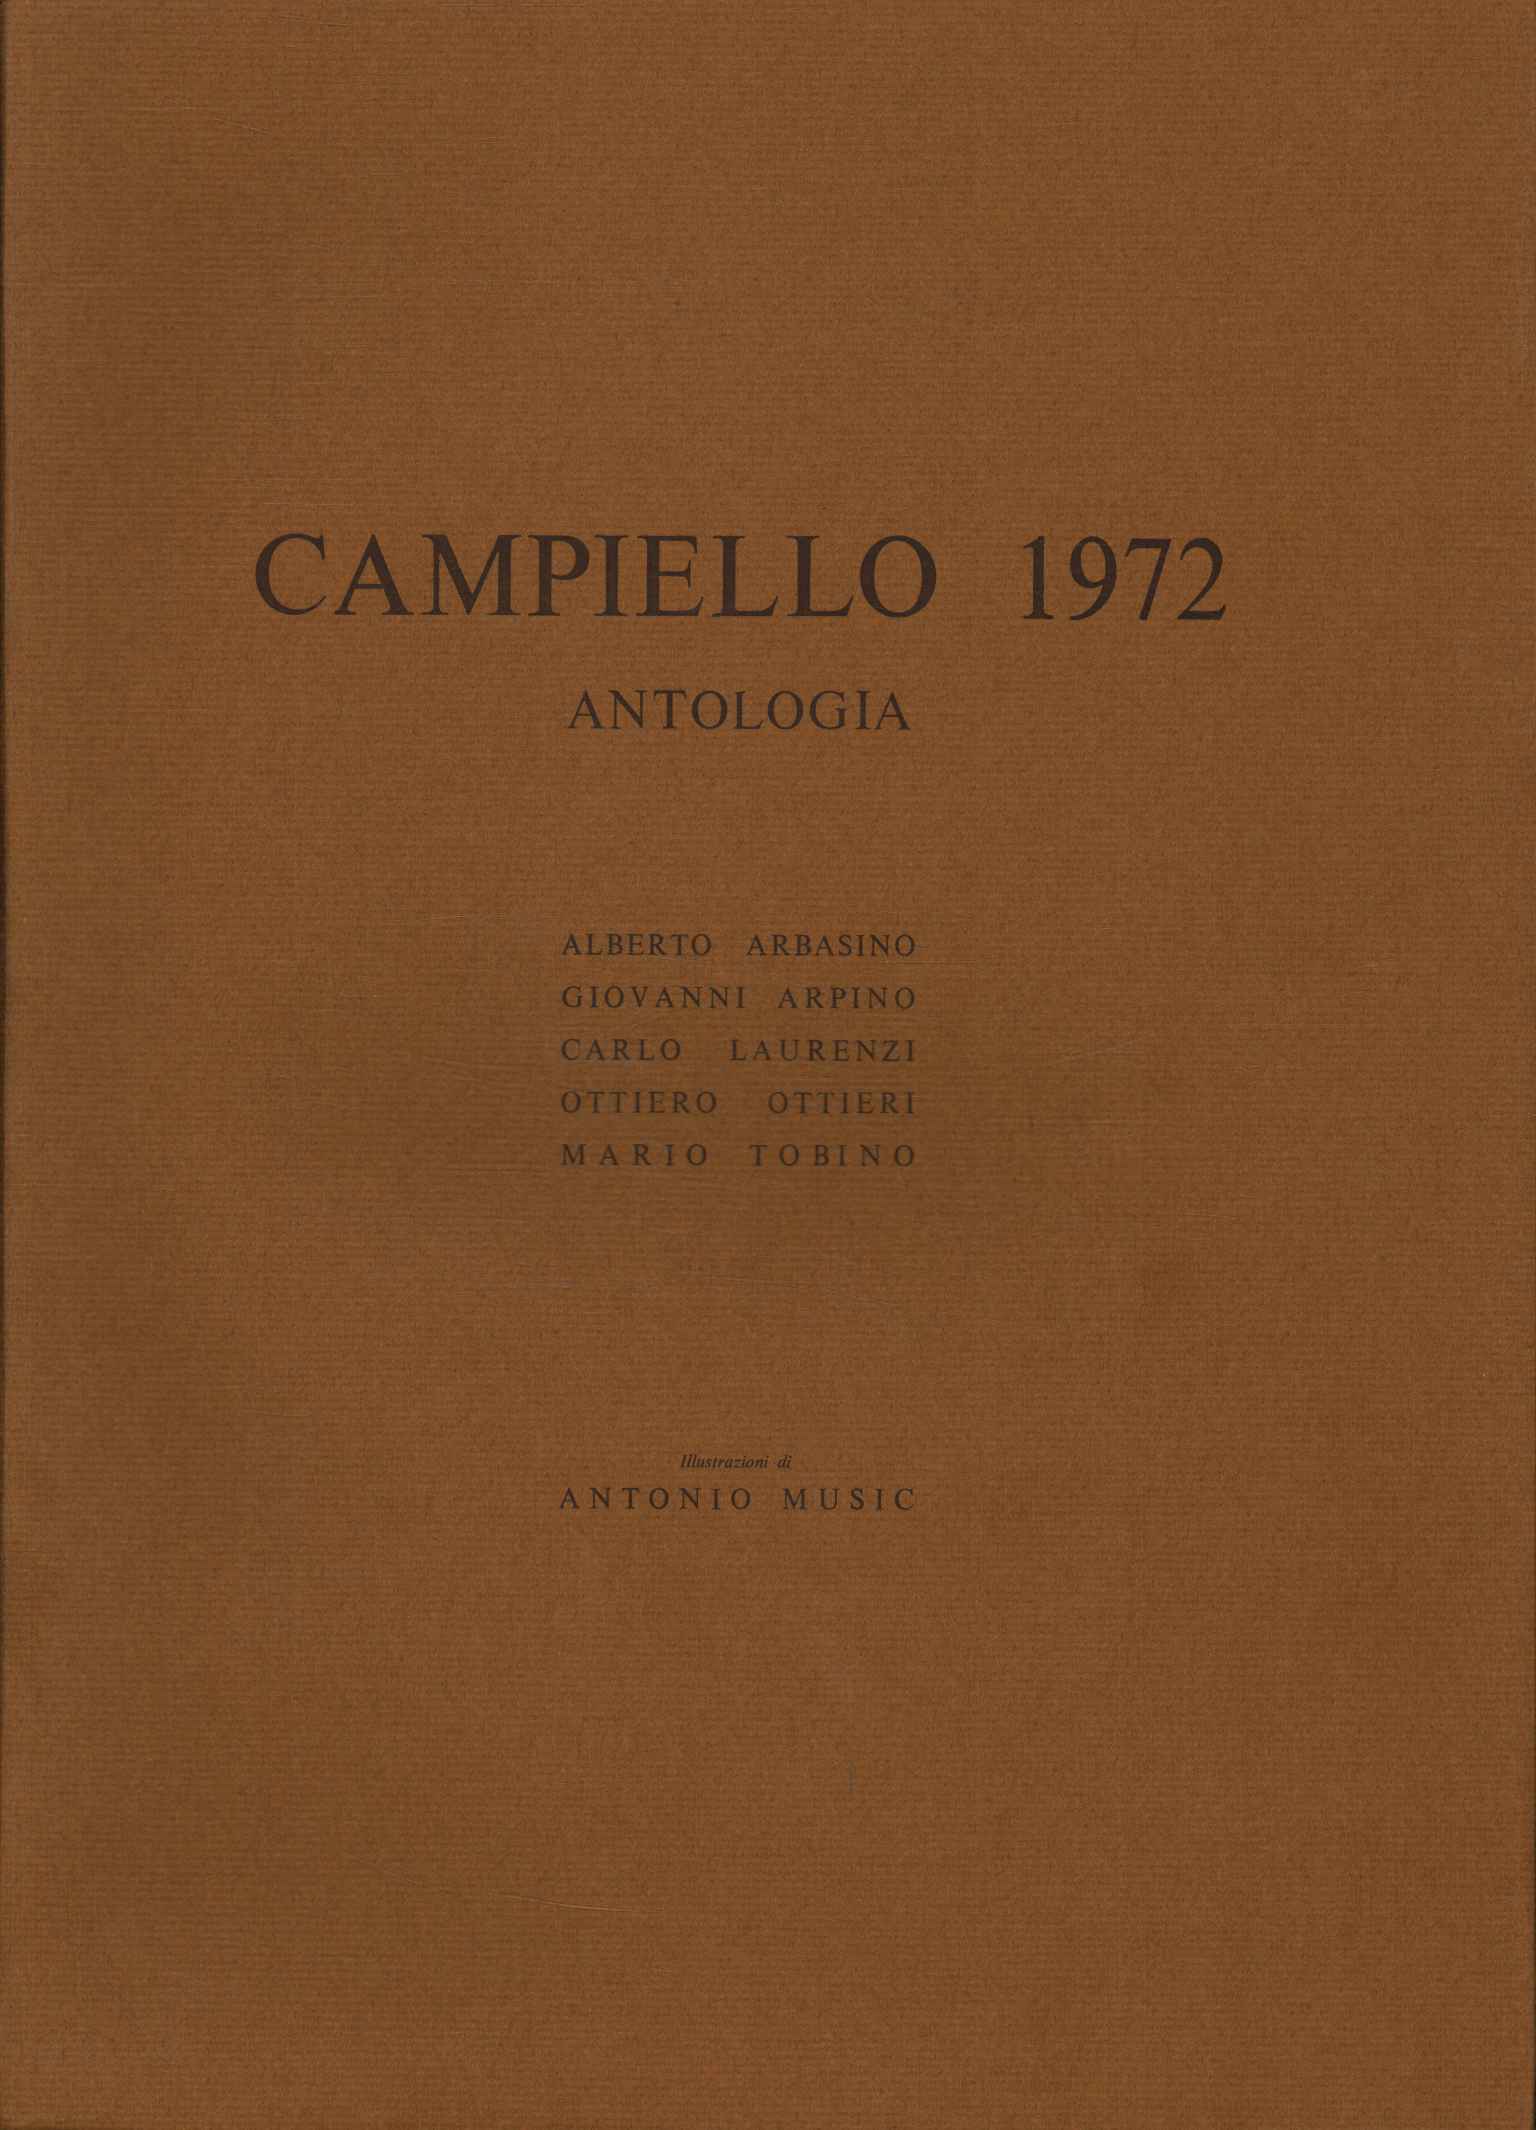 Anthologie von Campiello 1972